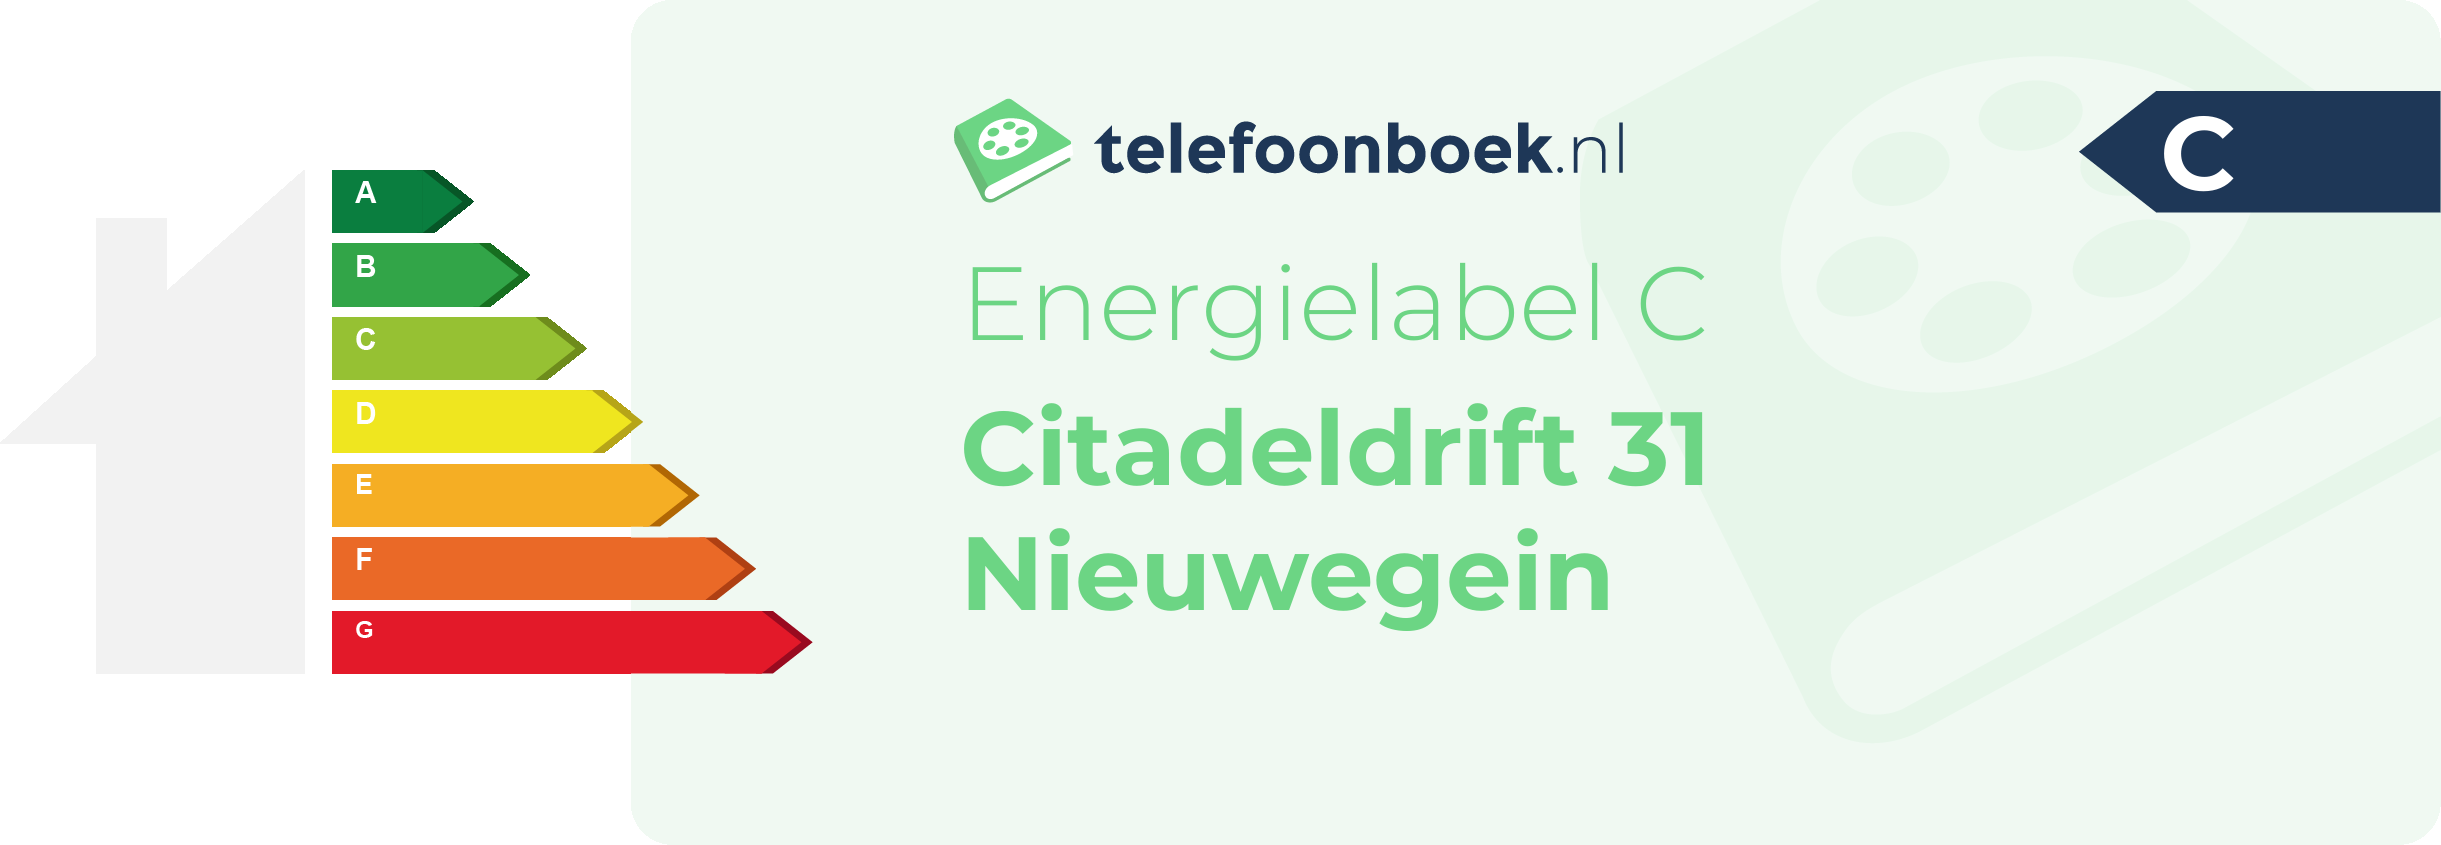 Energielabel Citadeldrift 31 Nieuwegein